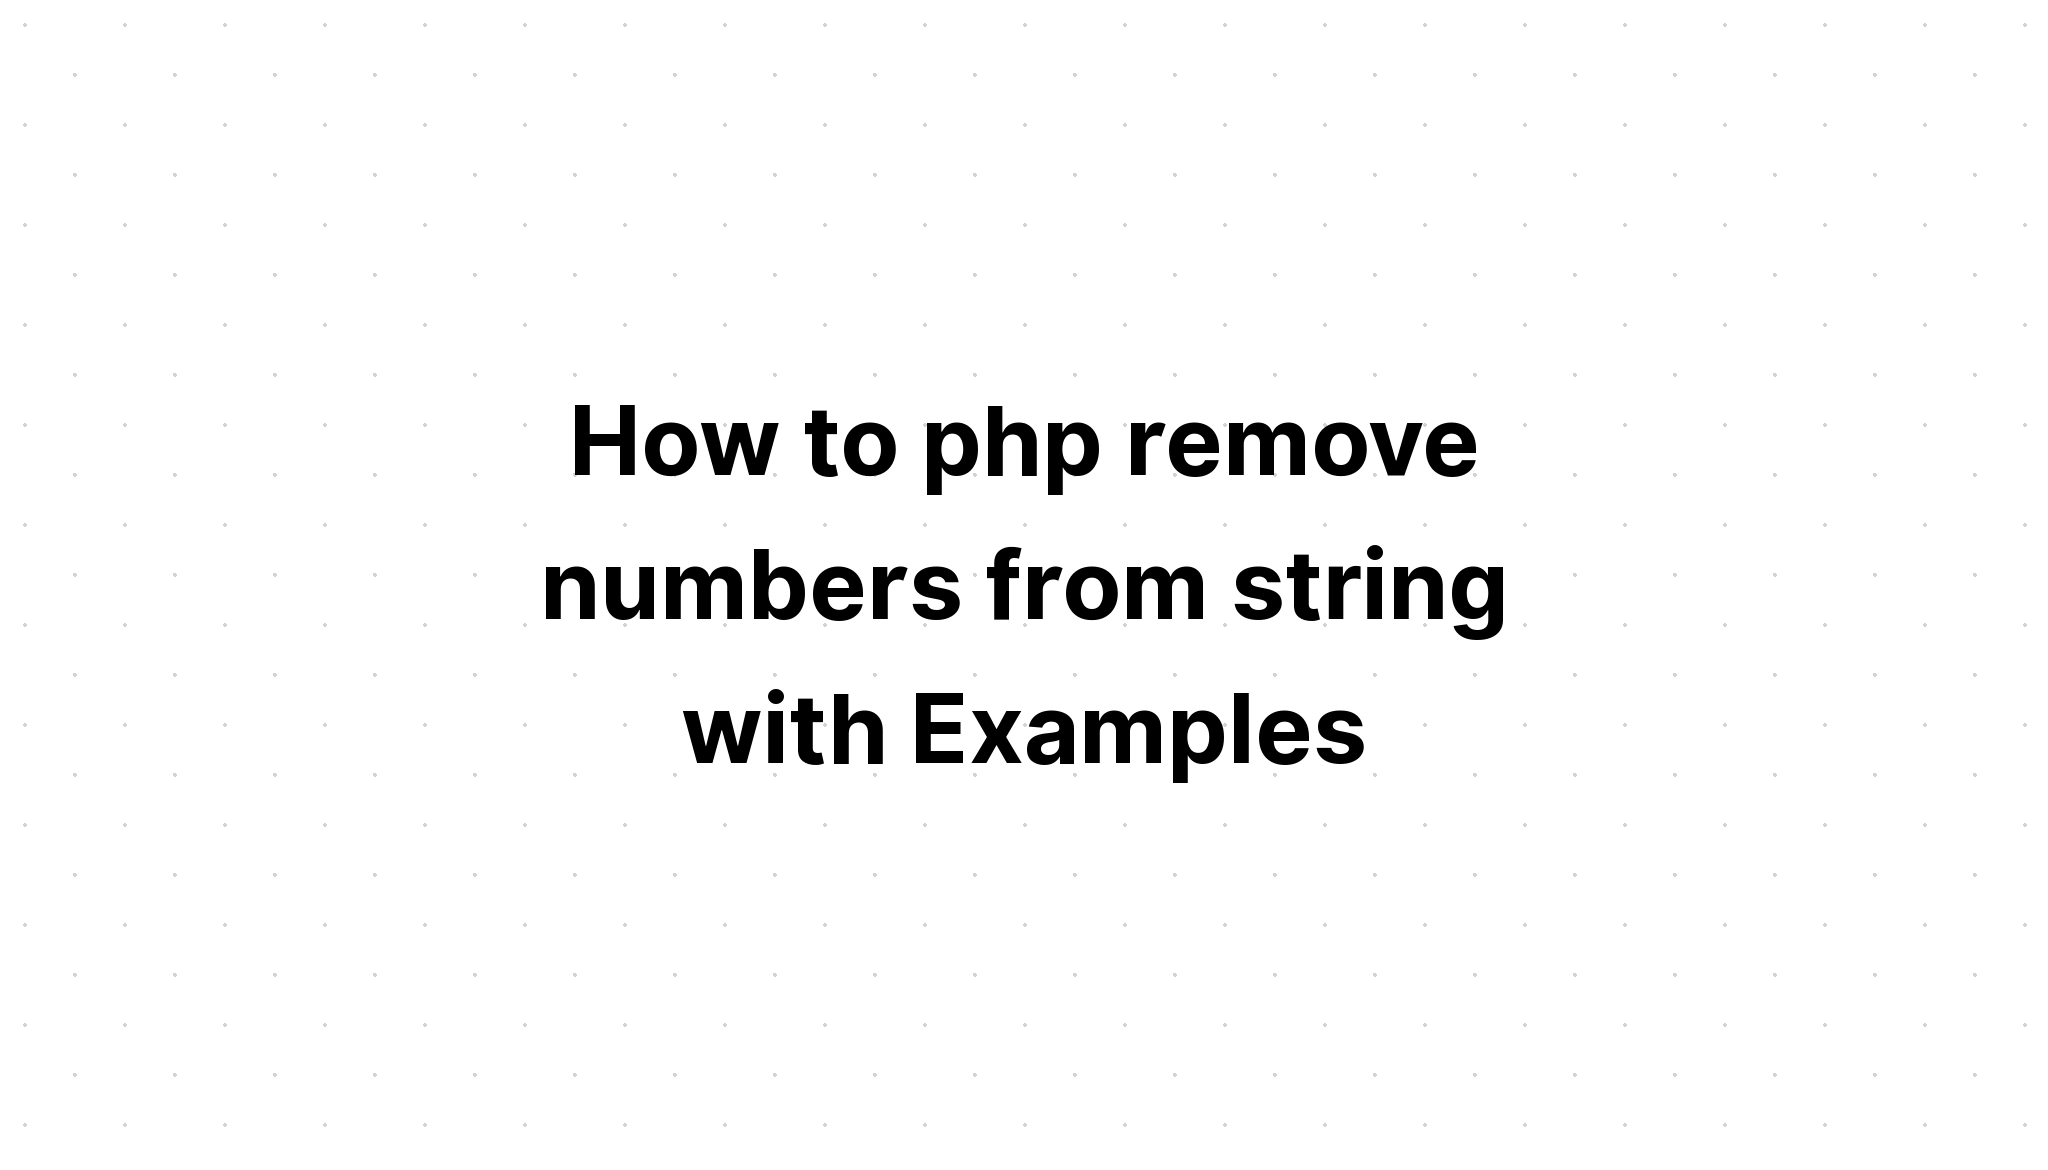 Cara php menghapus angka dari string dengan Contoh